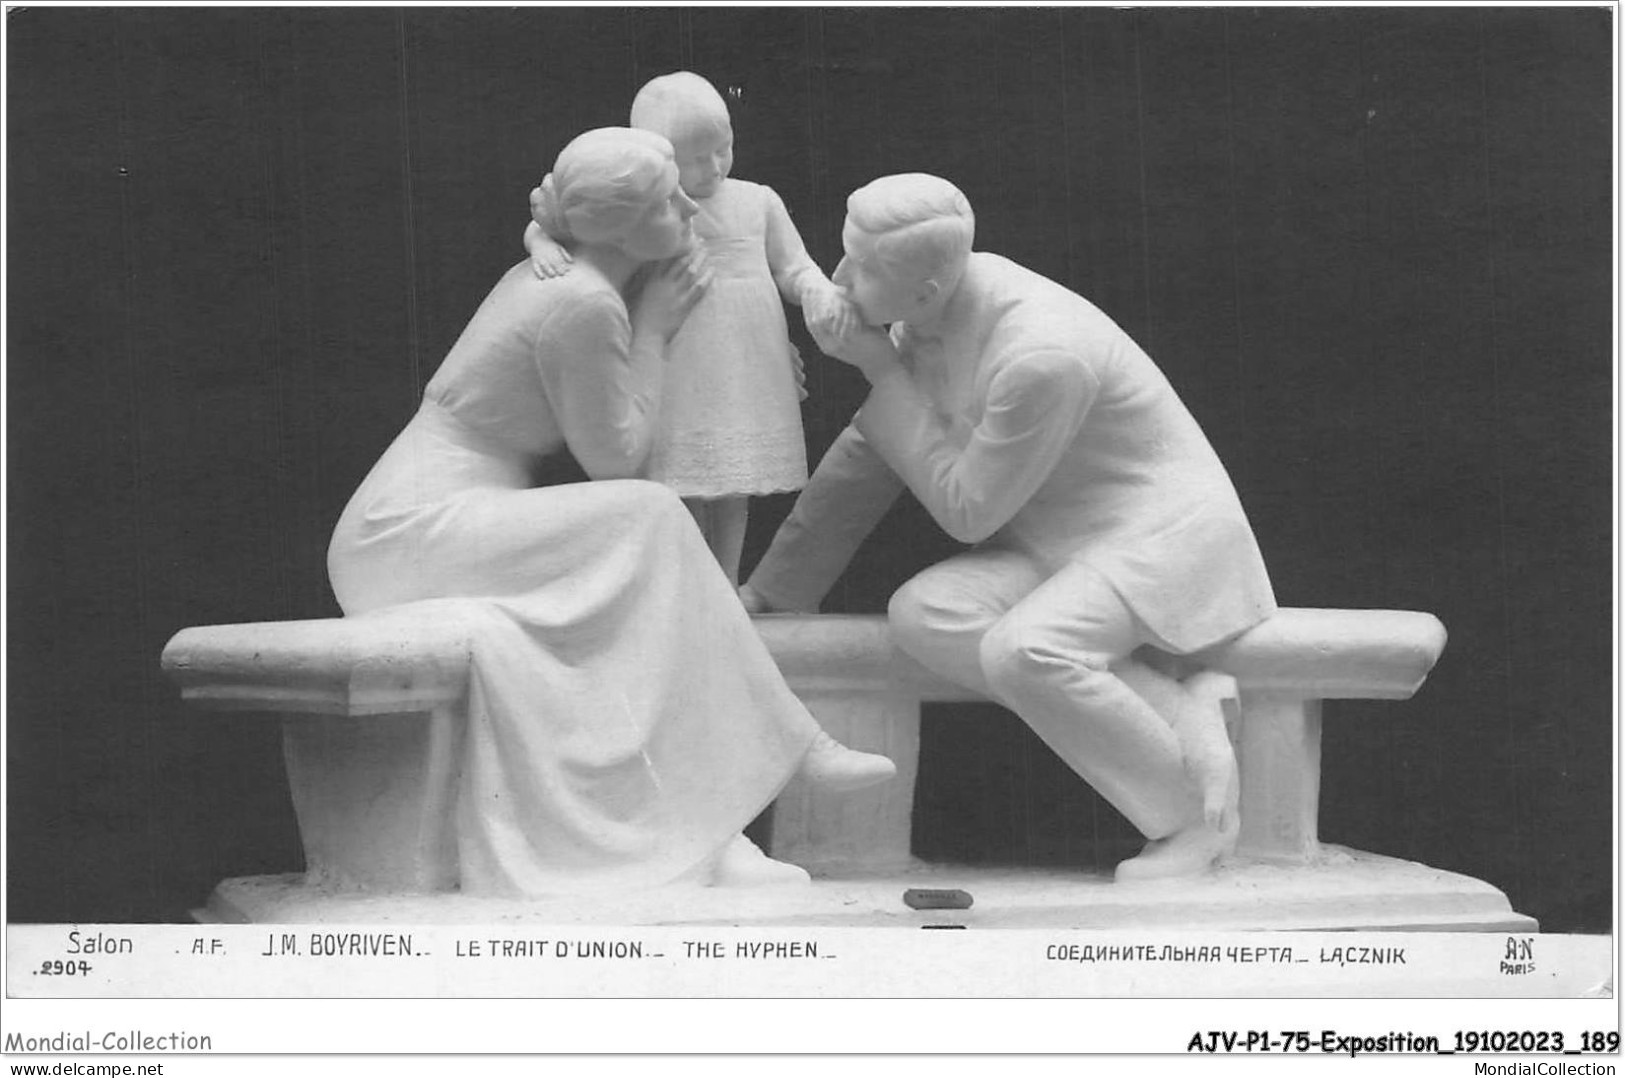 AJVP1-0095 - EXPOSITION - J-M BOYRIVEN - LE TRAIT D'UNION - SALON  - Sculptures